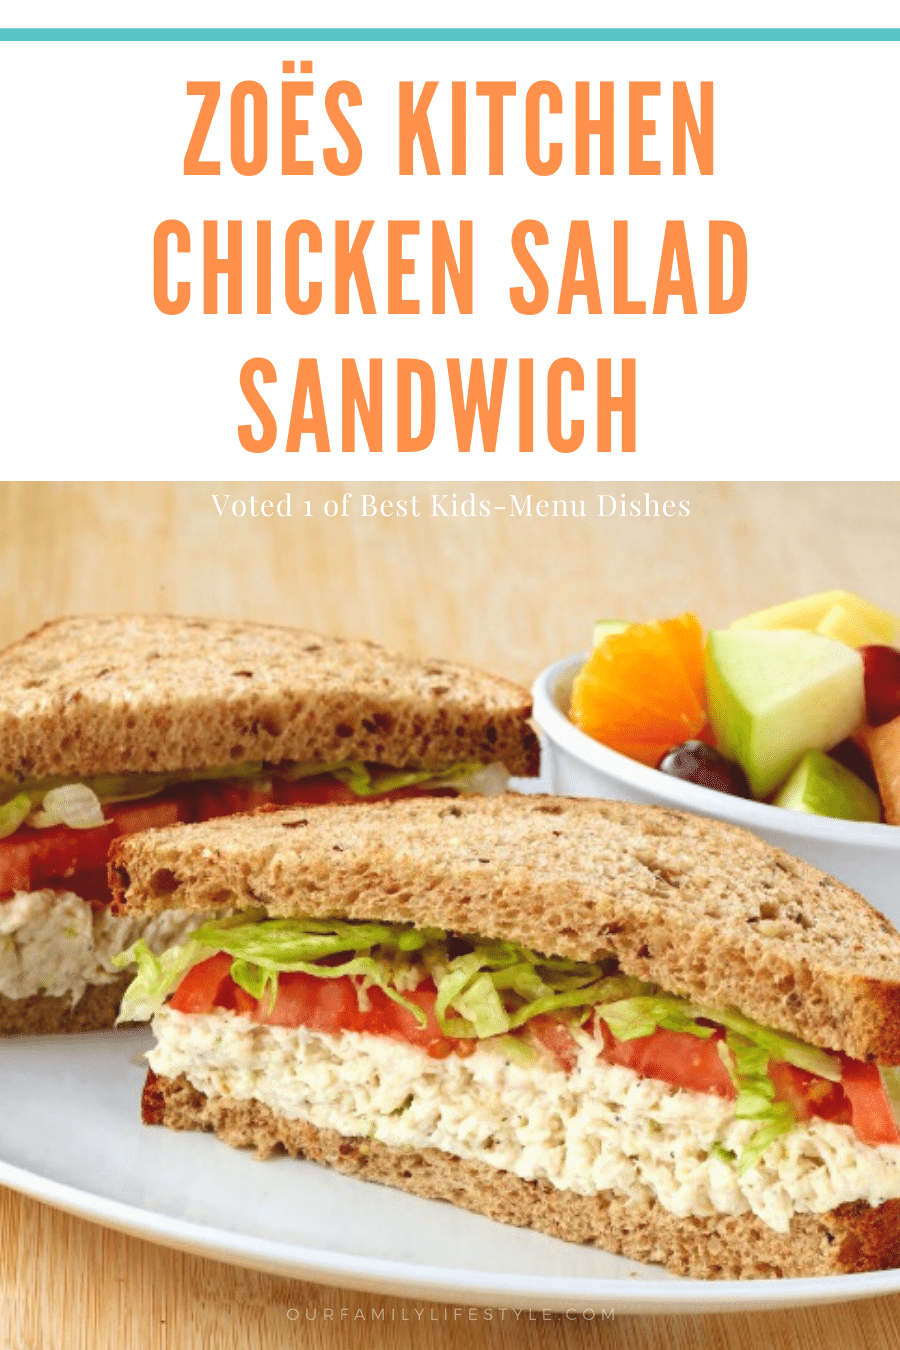 Zoës Kitchen Chicken Salad Sandwich